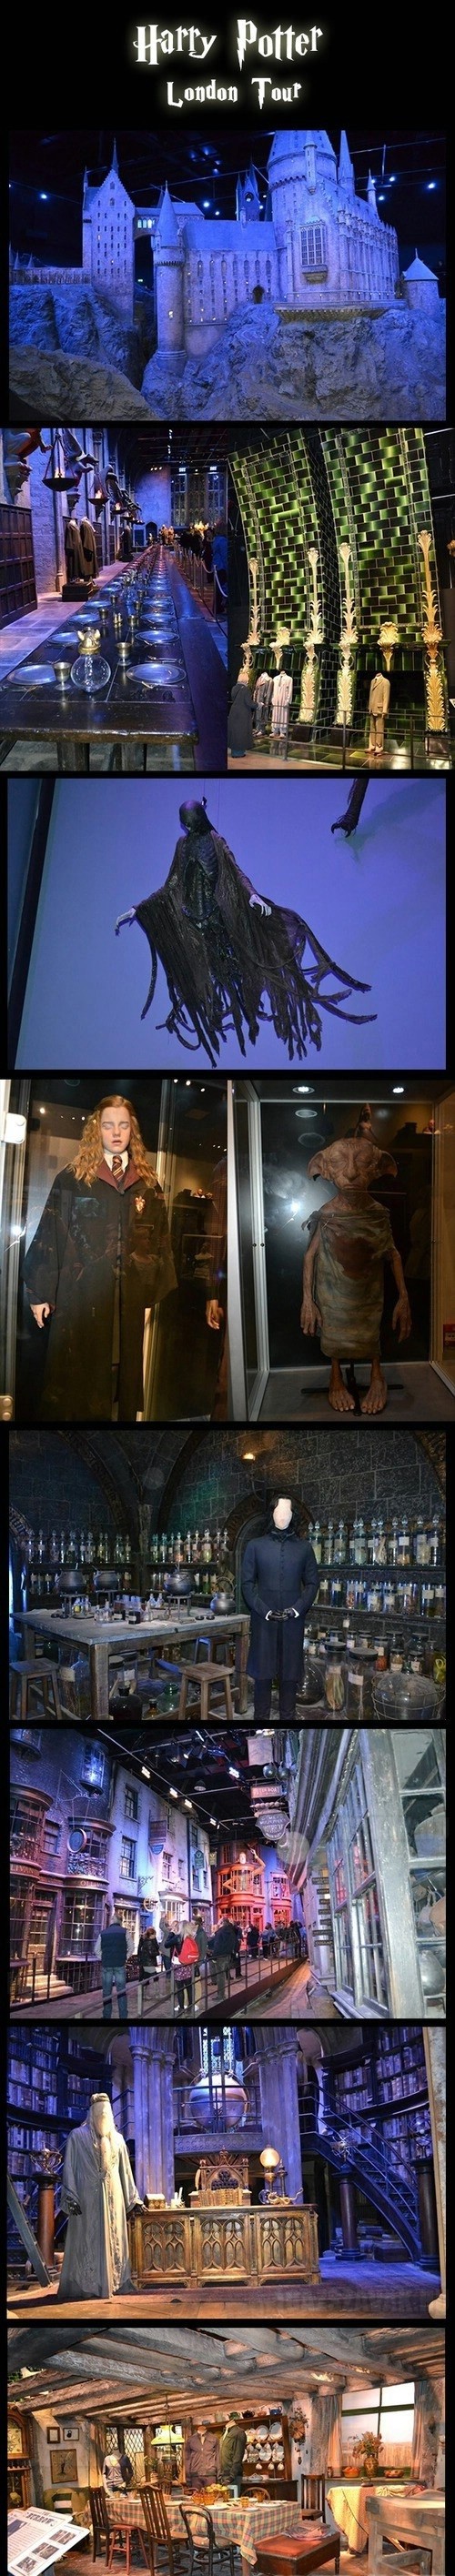 Amit biztosan meg akarsz nézni...Harry Potter múzeum Londonban...